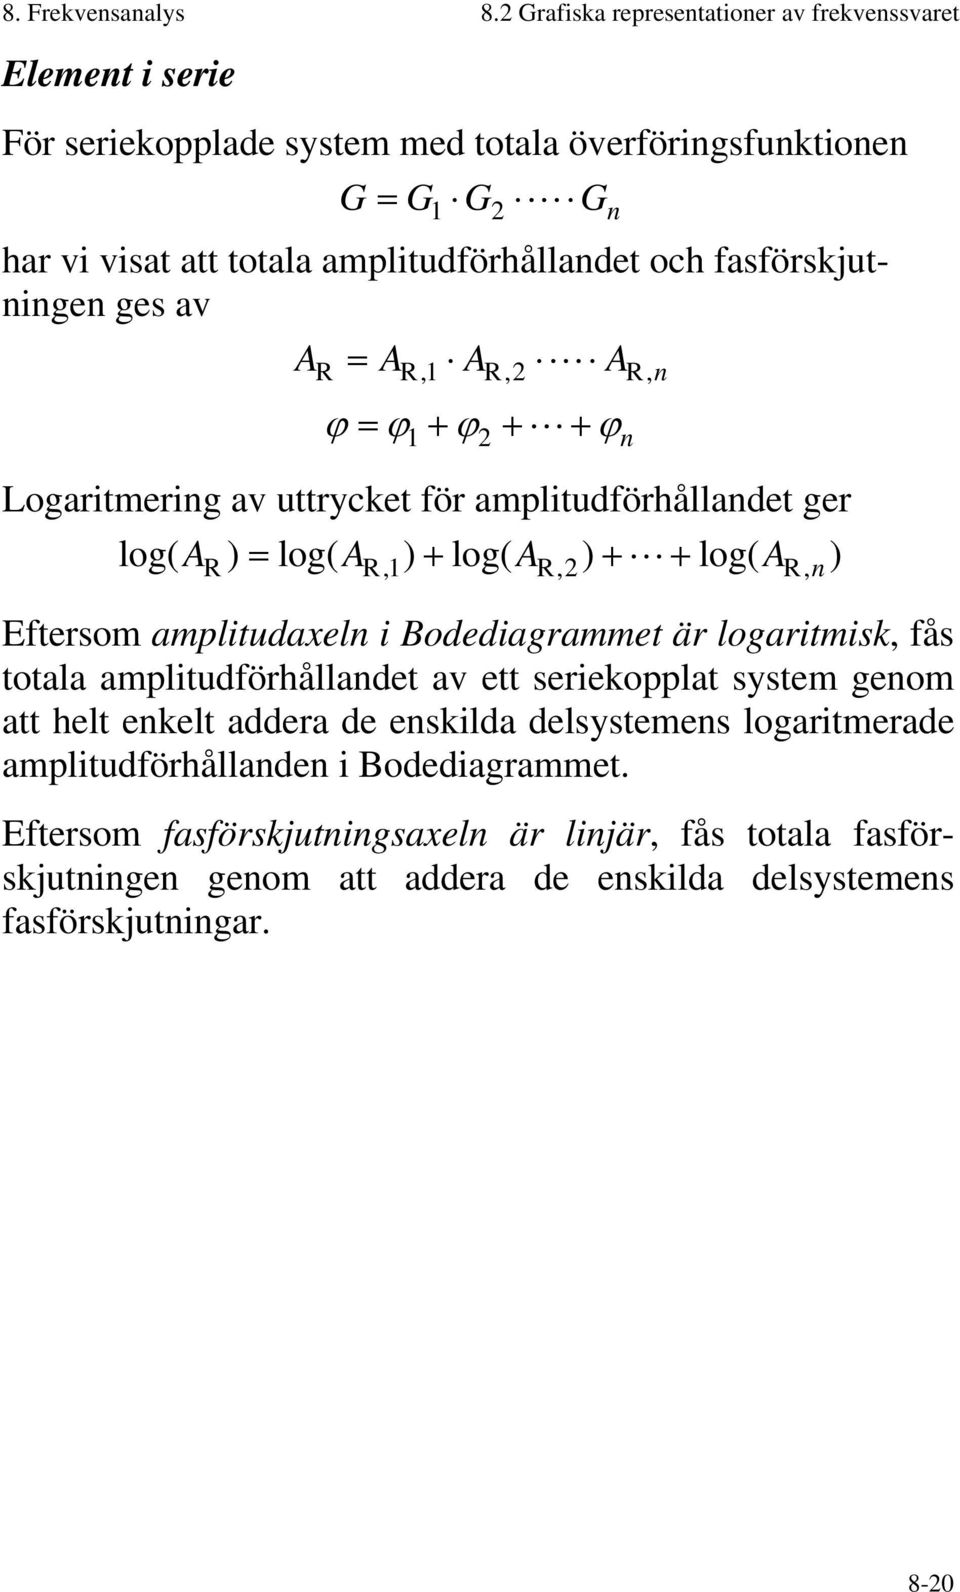 fasförskjutningen ges av A = A A A R R, R,2 R,n ϕ = ϕ + ϕ + + ϕ 2 n Logaritmering av uttrycket för amplitudförhållandet ger log( A ) = log( A ) + log( A ) + + log( A ) R R, R,2 R, n